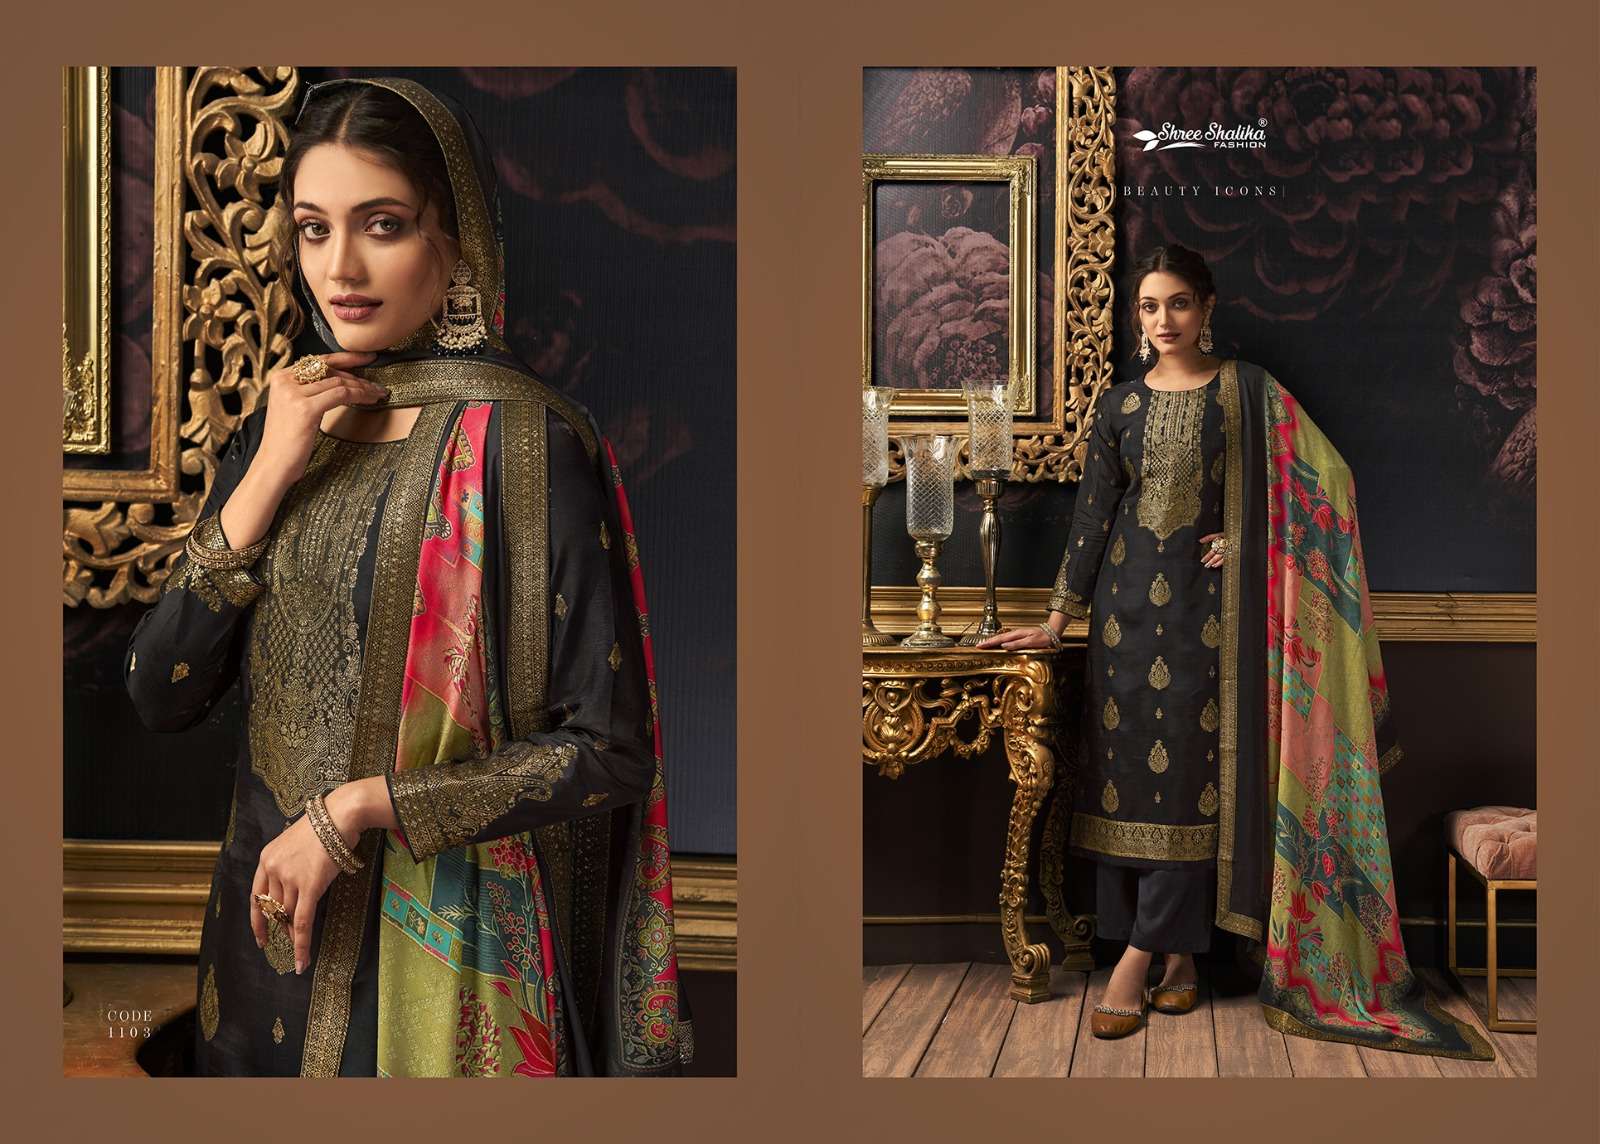 shalika fashion mandakini vol-11 1101-1108 series designer pakistani salwar kameez wholesaler surat gujarat